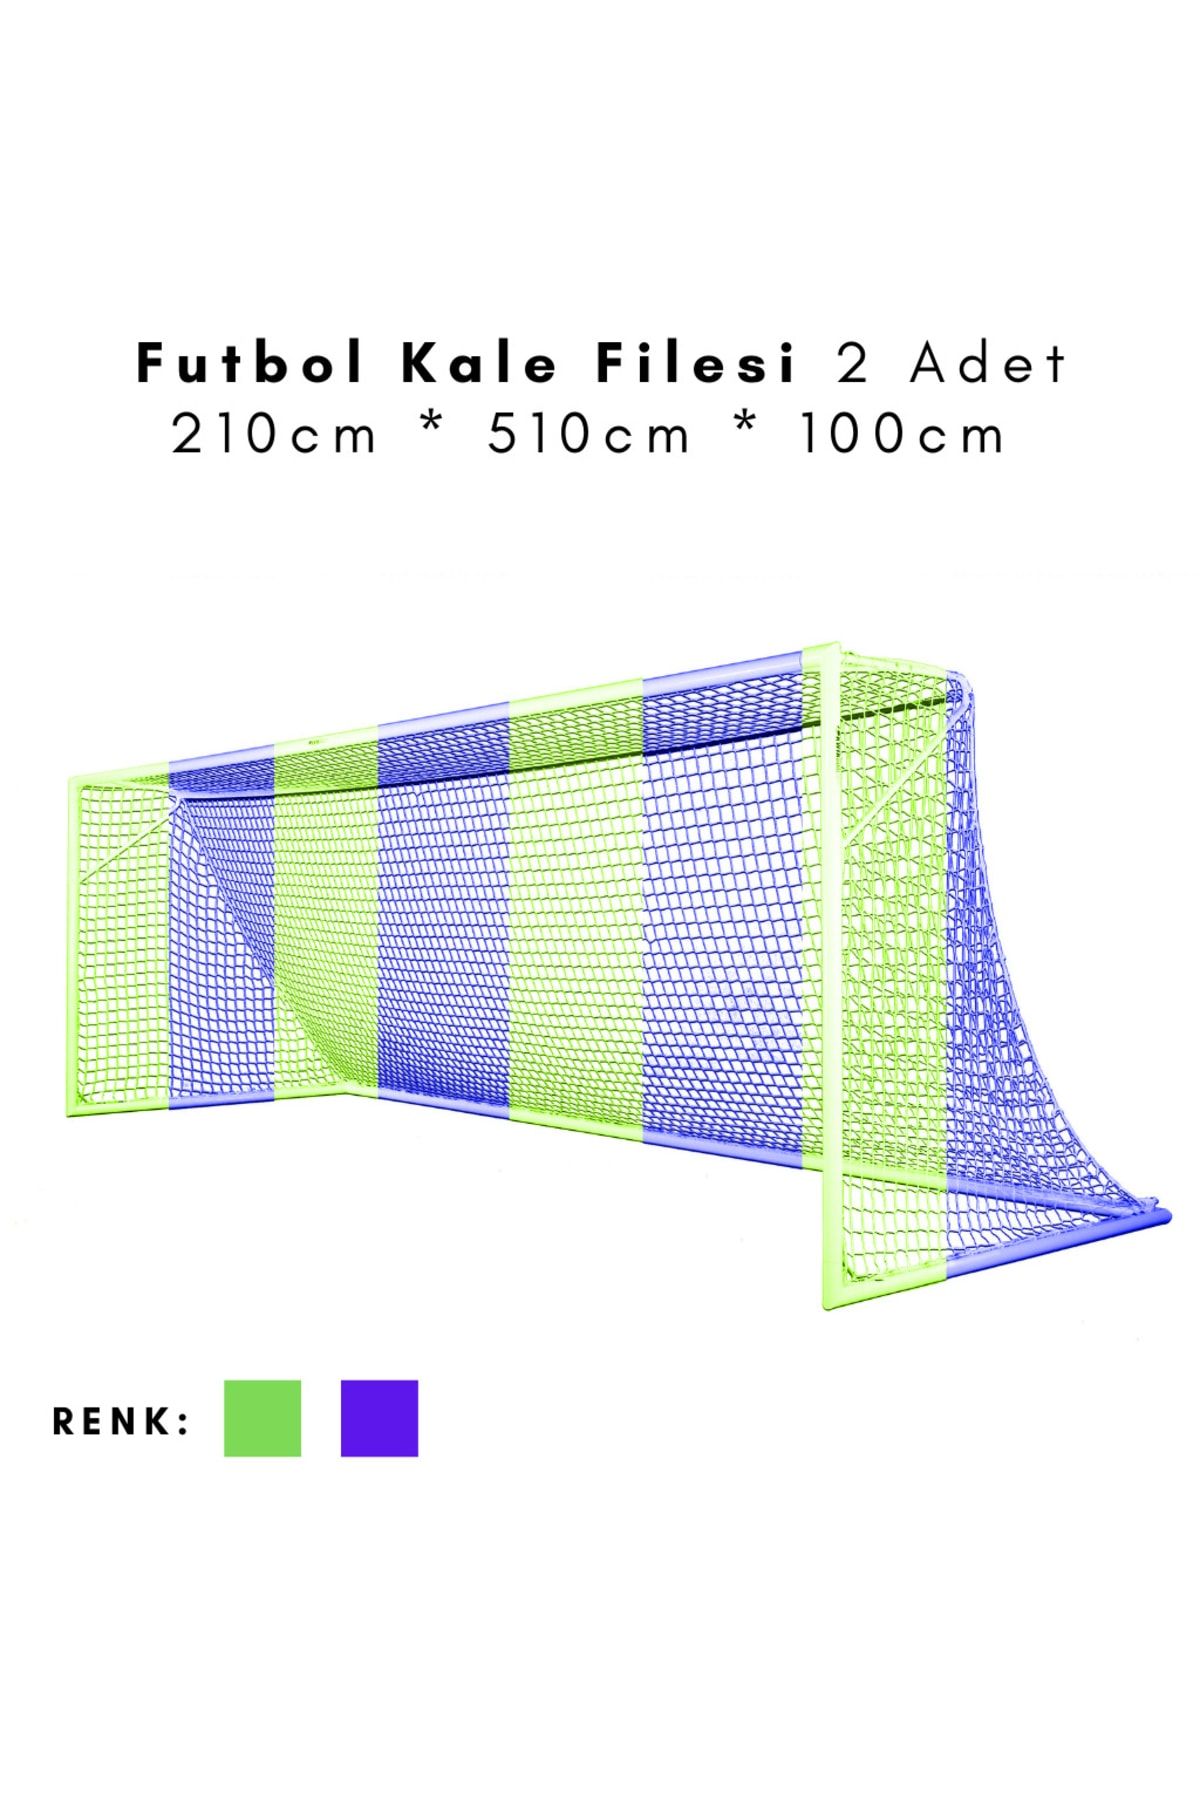 ÖZBEK Futbol Kale Filesi - Halı Saha Kale Ağı 210 * 510 * 100cm (2 Adet File)